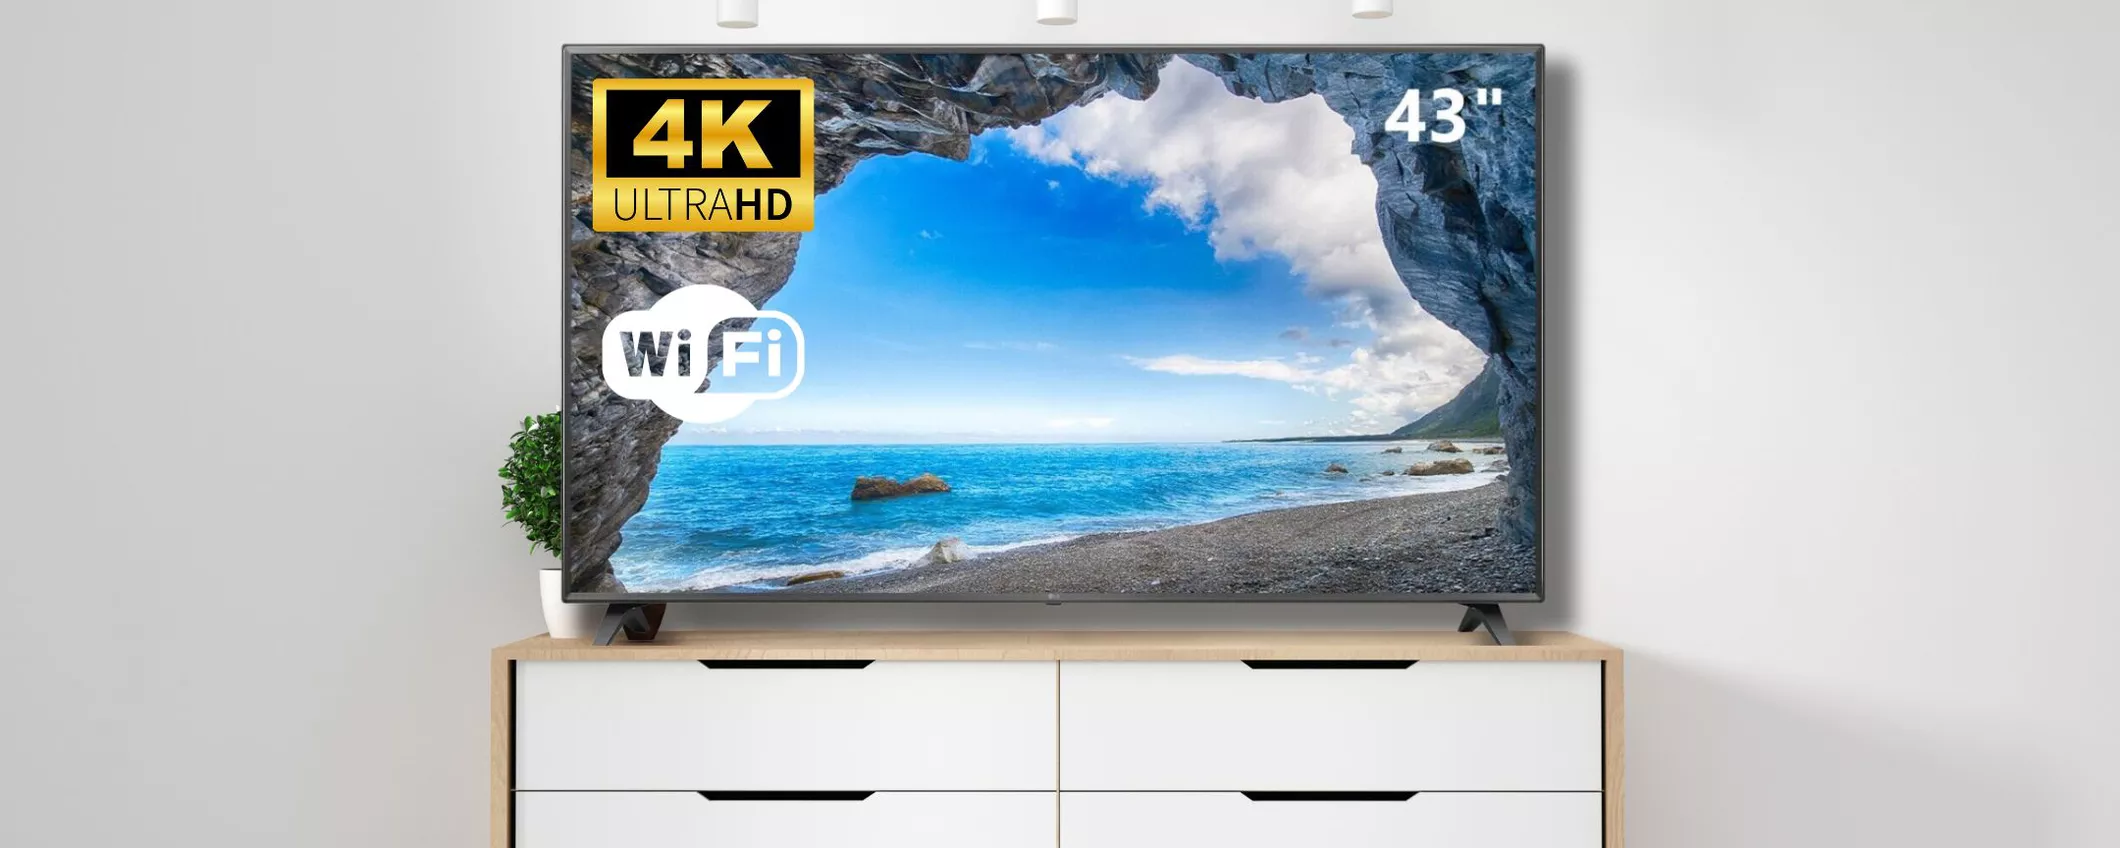 OCCASIONE IN ARRIVO: Smart TV LG con risoluzione 4K a un prezzo ridicolo!